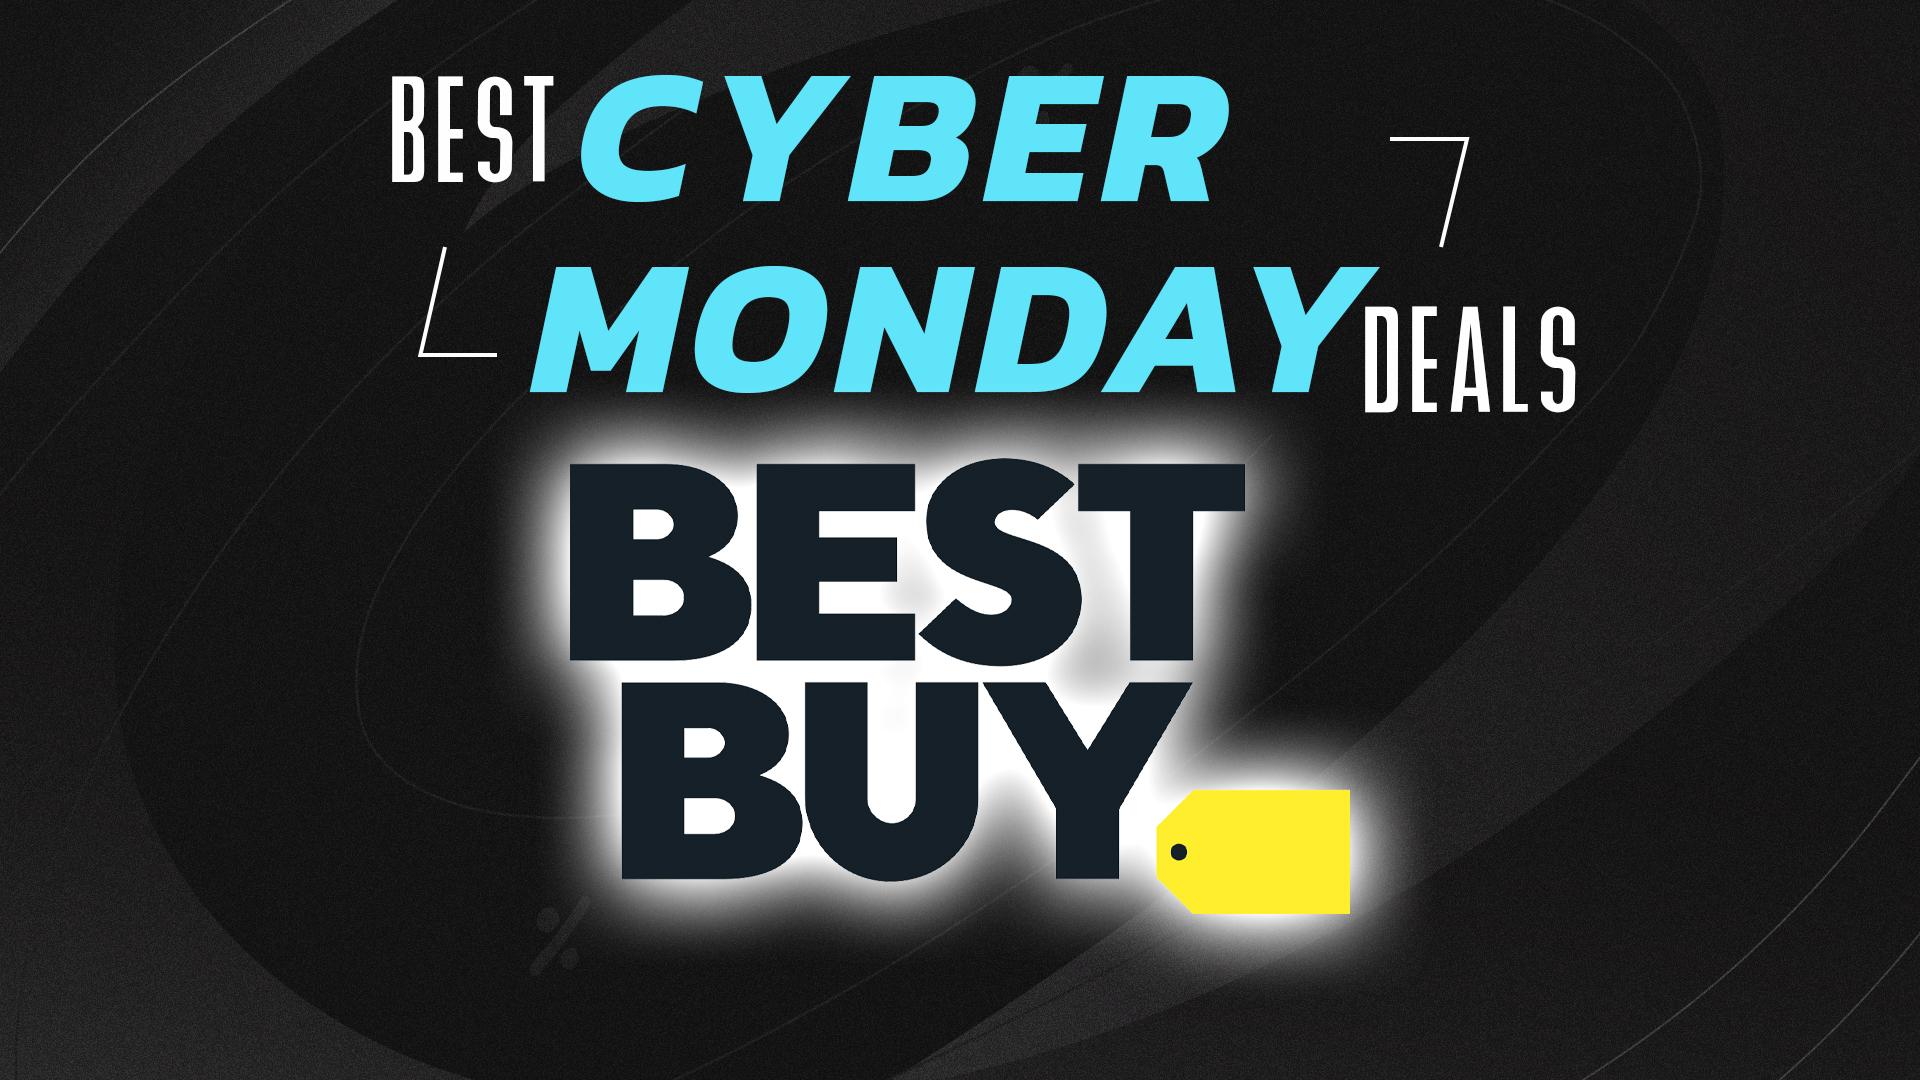 Best Buy Early Black Friday Deals: LG OLED TV, PS5 Slim Bundle